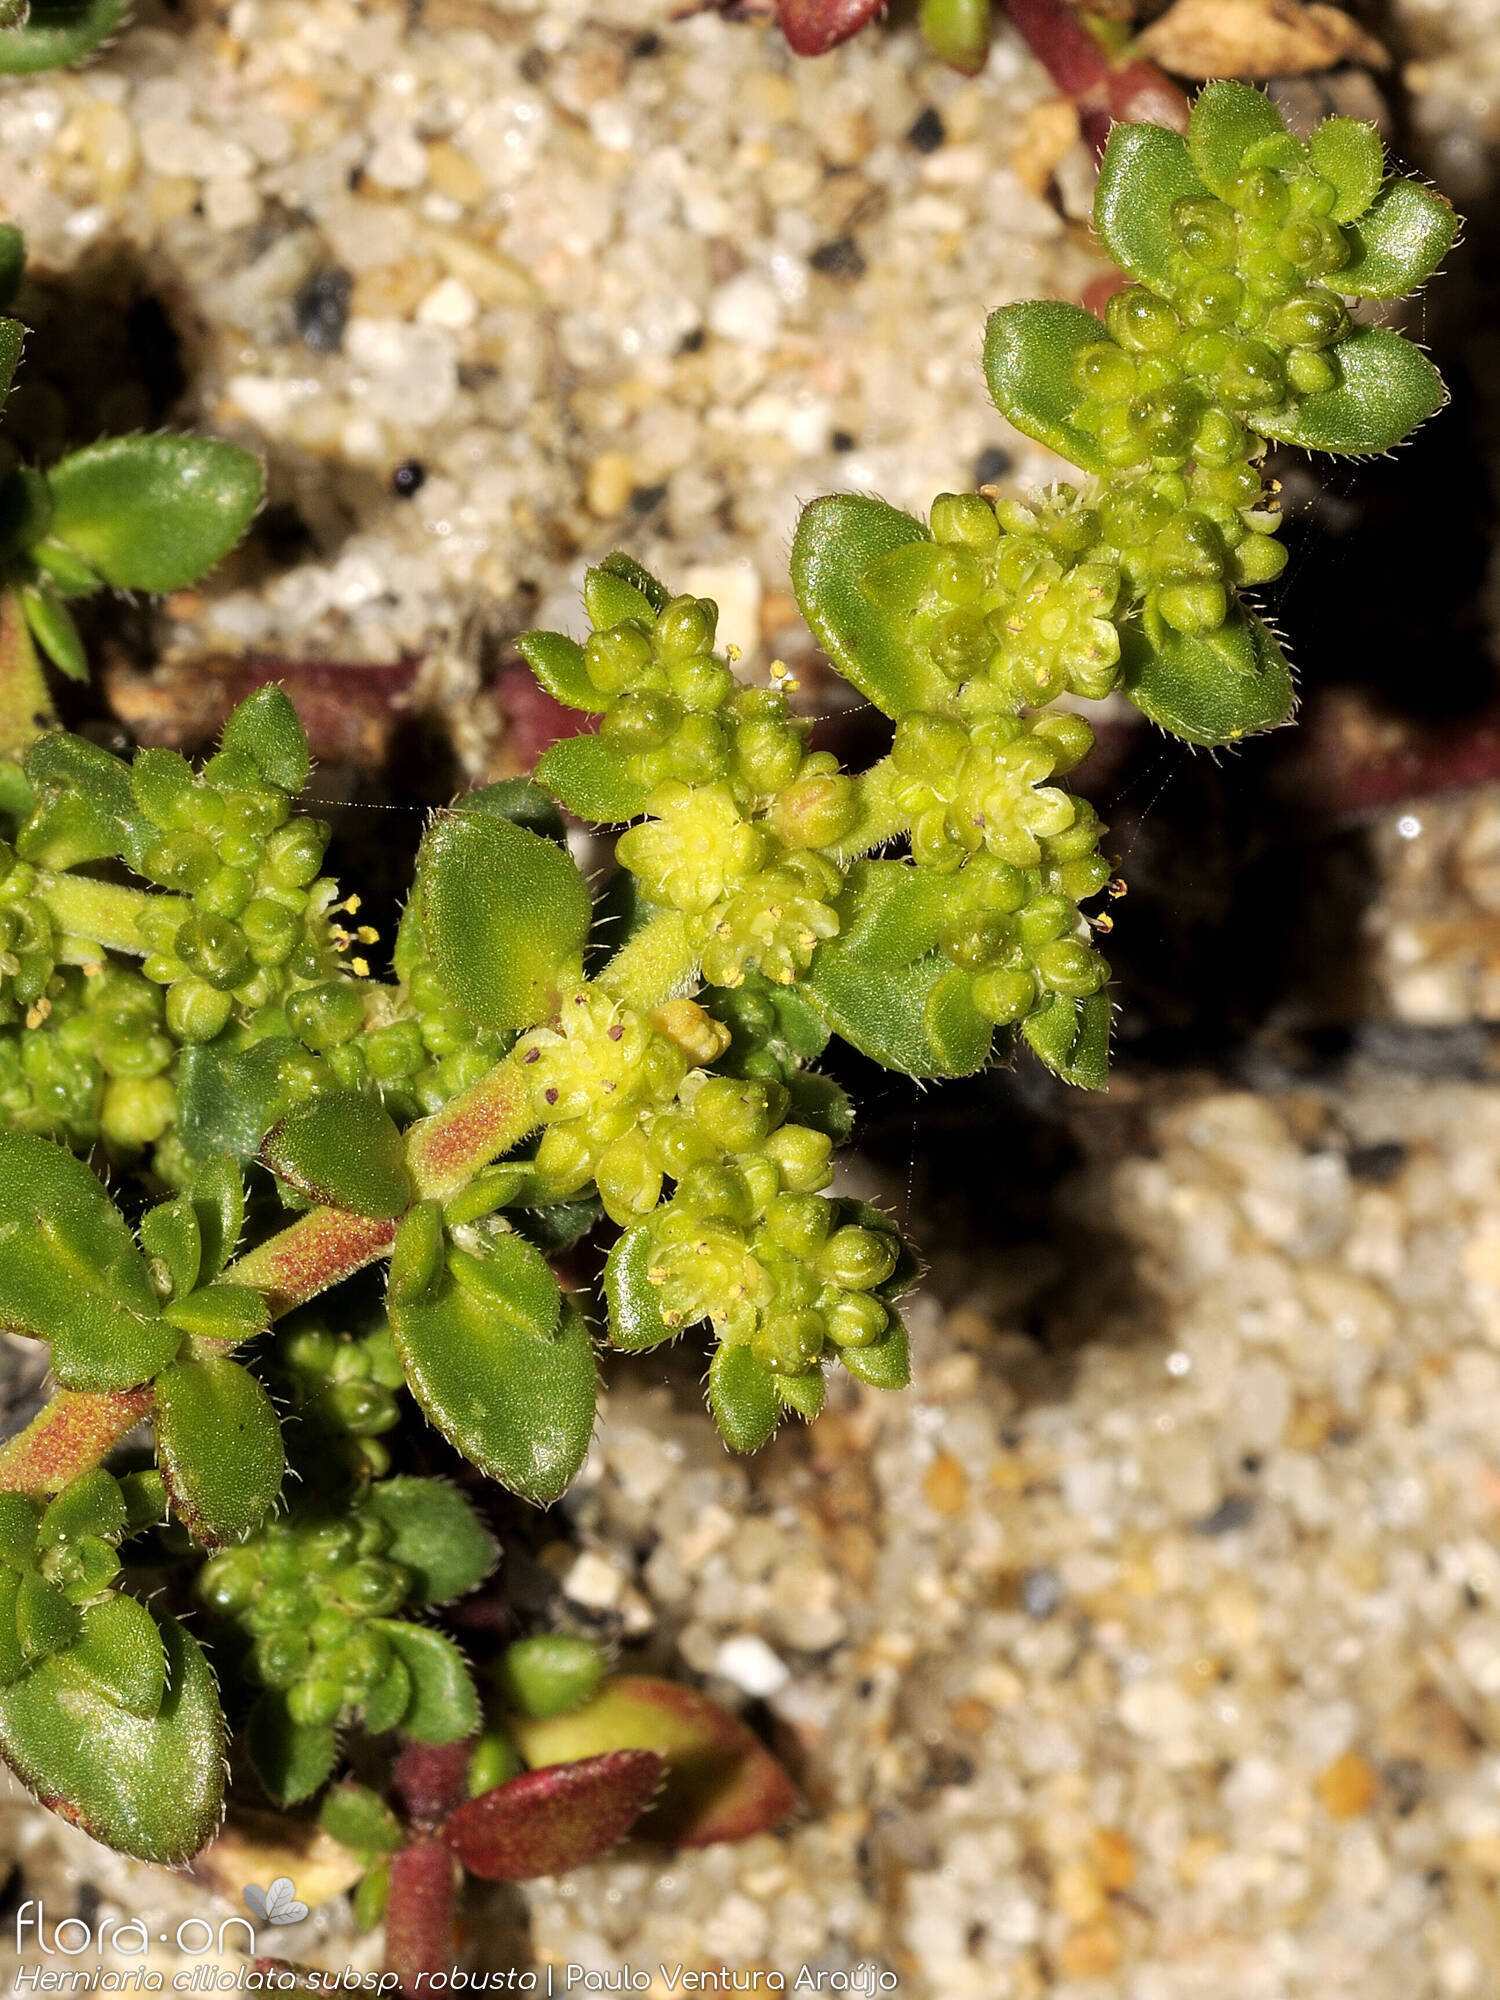 Herniaria ciliolata robusta - Flor (geral) | Paulo Ventura Araújo; CC BY-NC 4.0